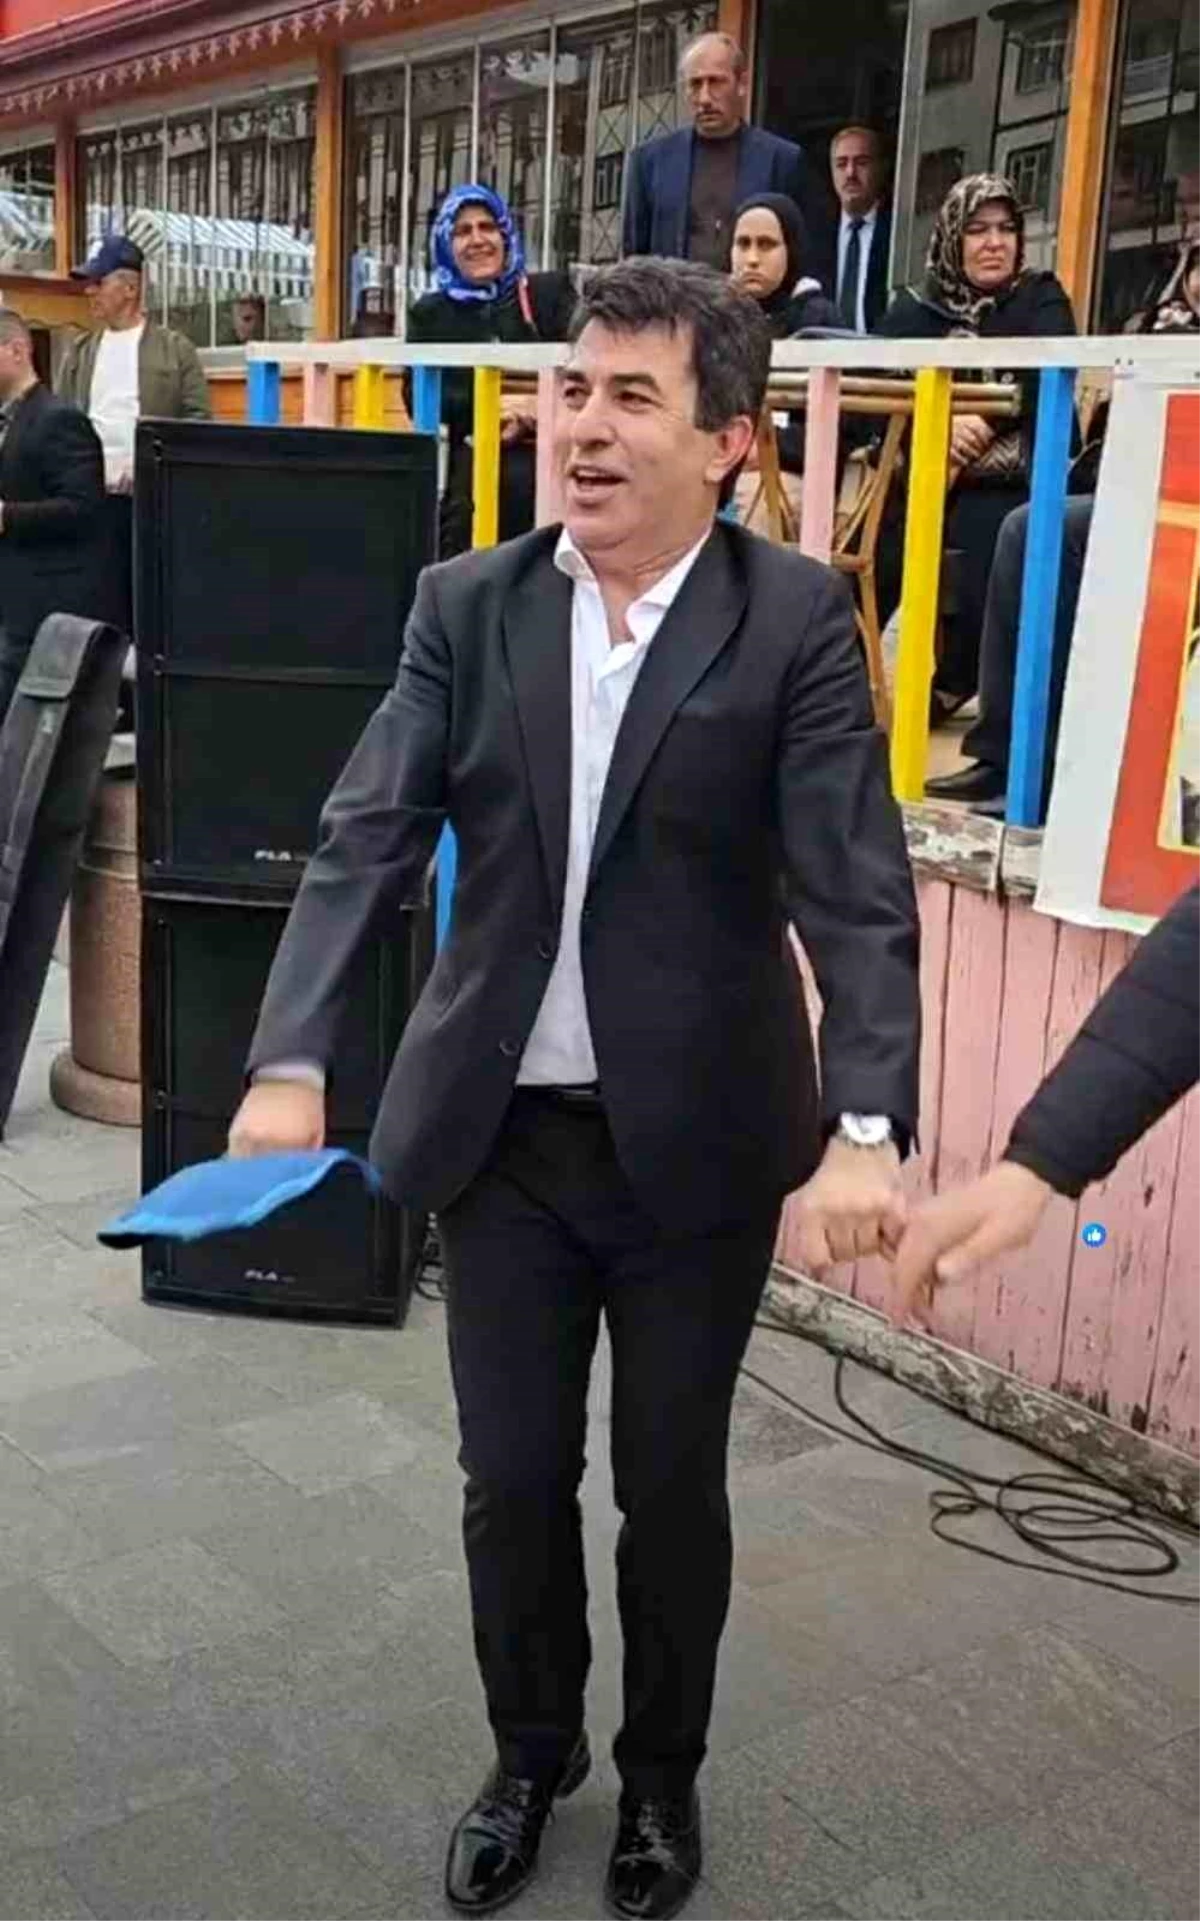 İspir Belediye Başkanı Ahmet Coşkun, yeni döneme halay çekerek başladı